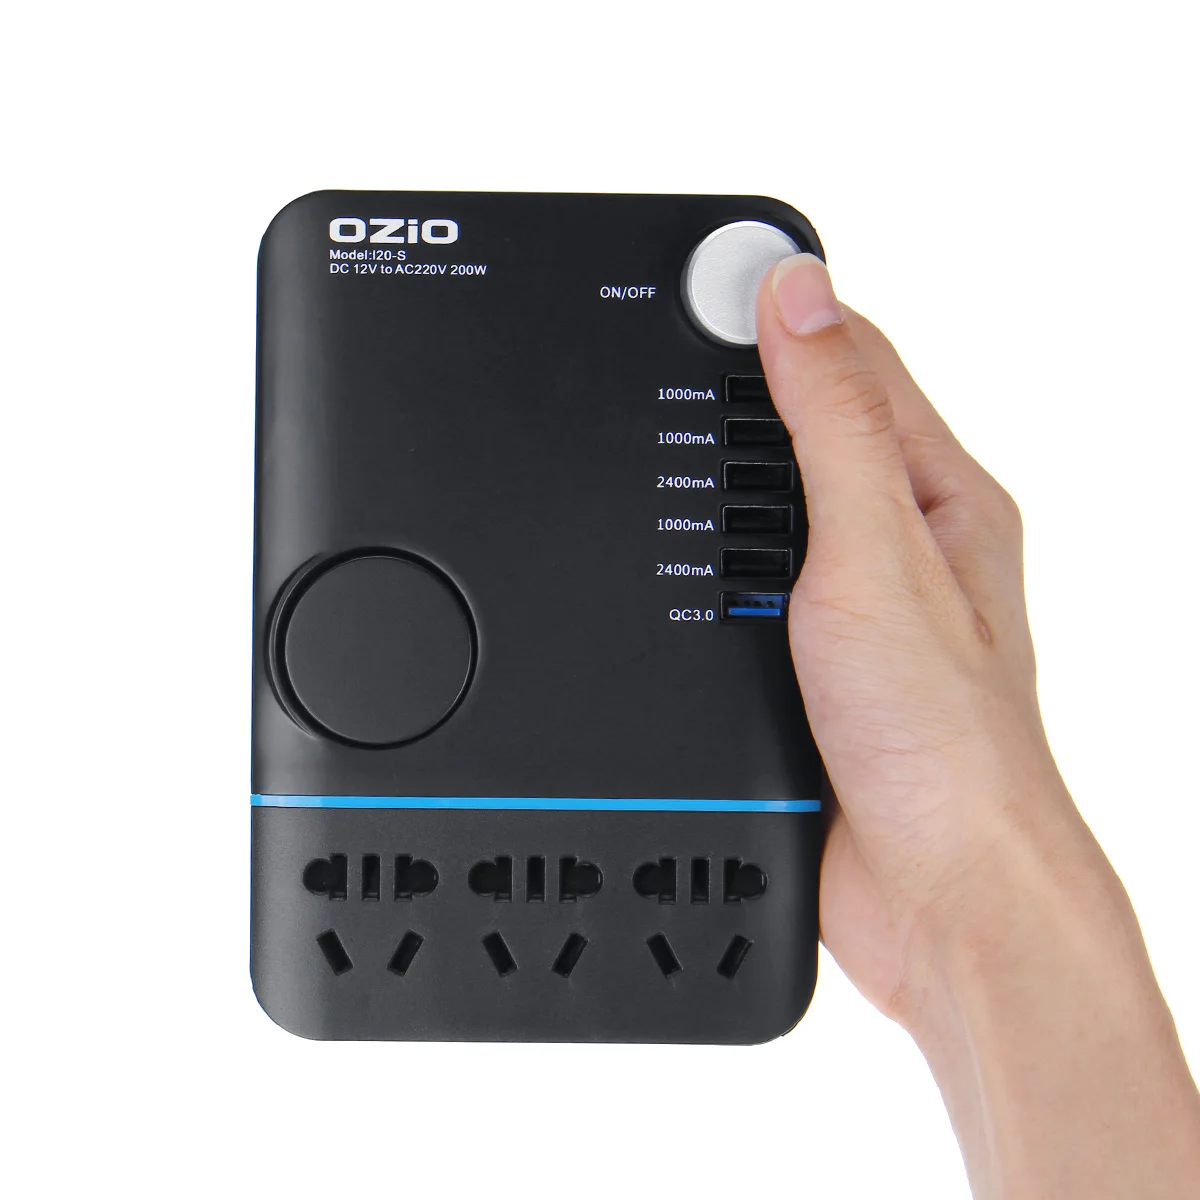 Ozio 200W автомобильный инвертор для прикуривателя DC 12V To AC 220V преобразователь, зарядное устройство, адаптер трансформатор Зажигалка Разъем USB выход